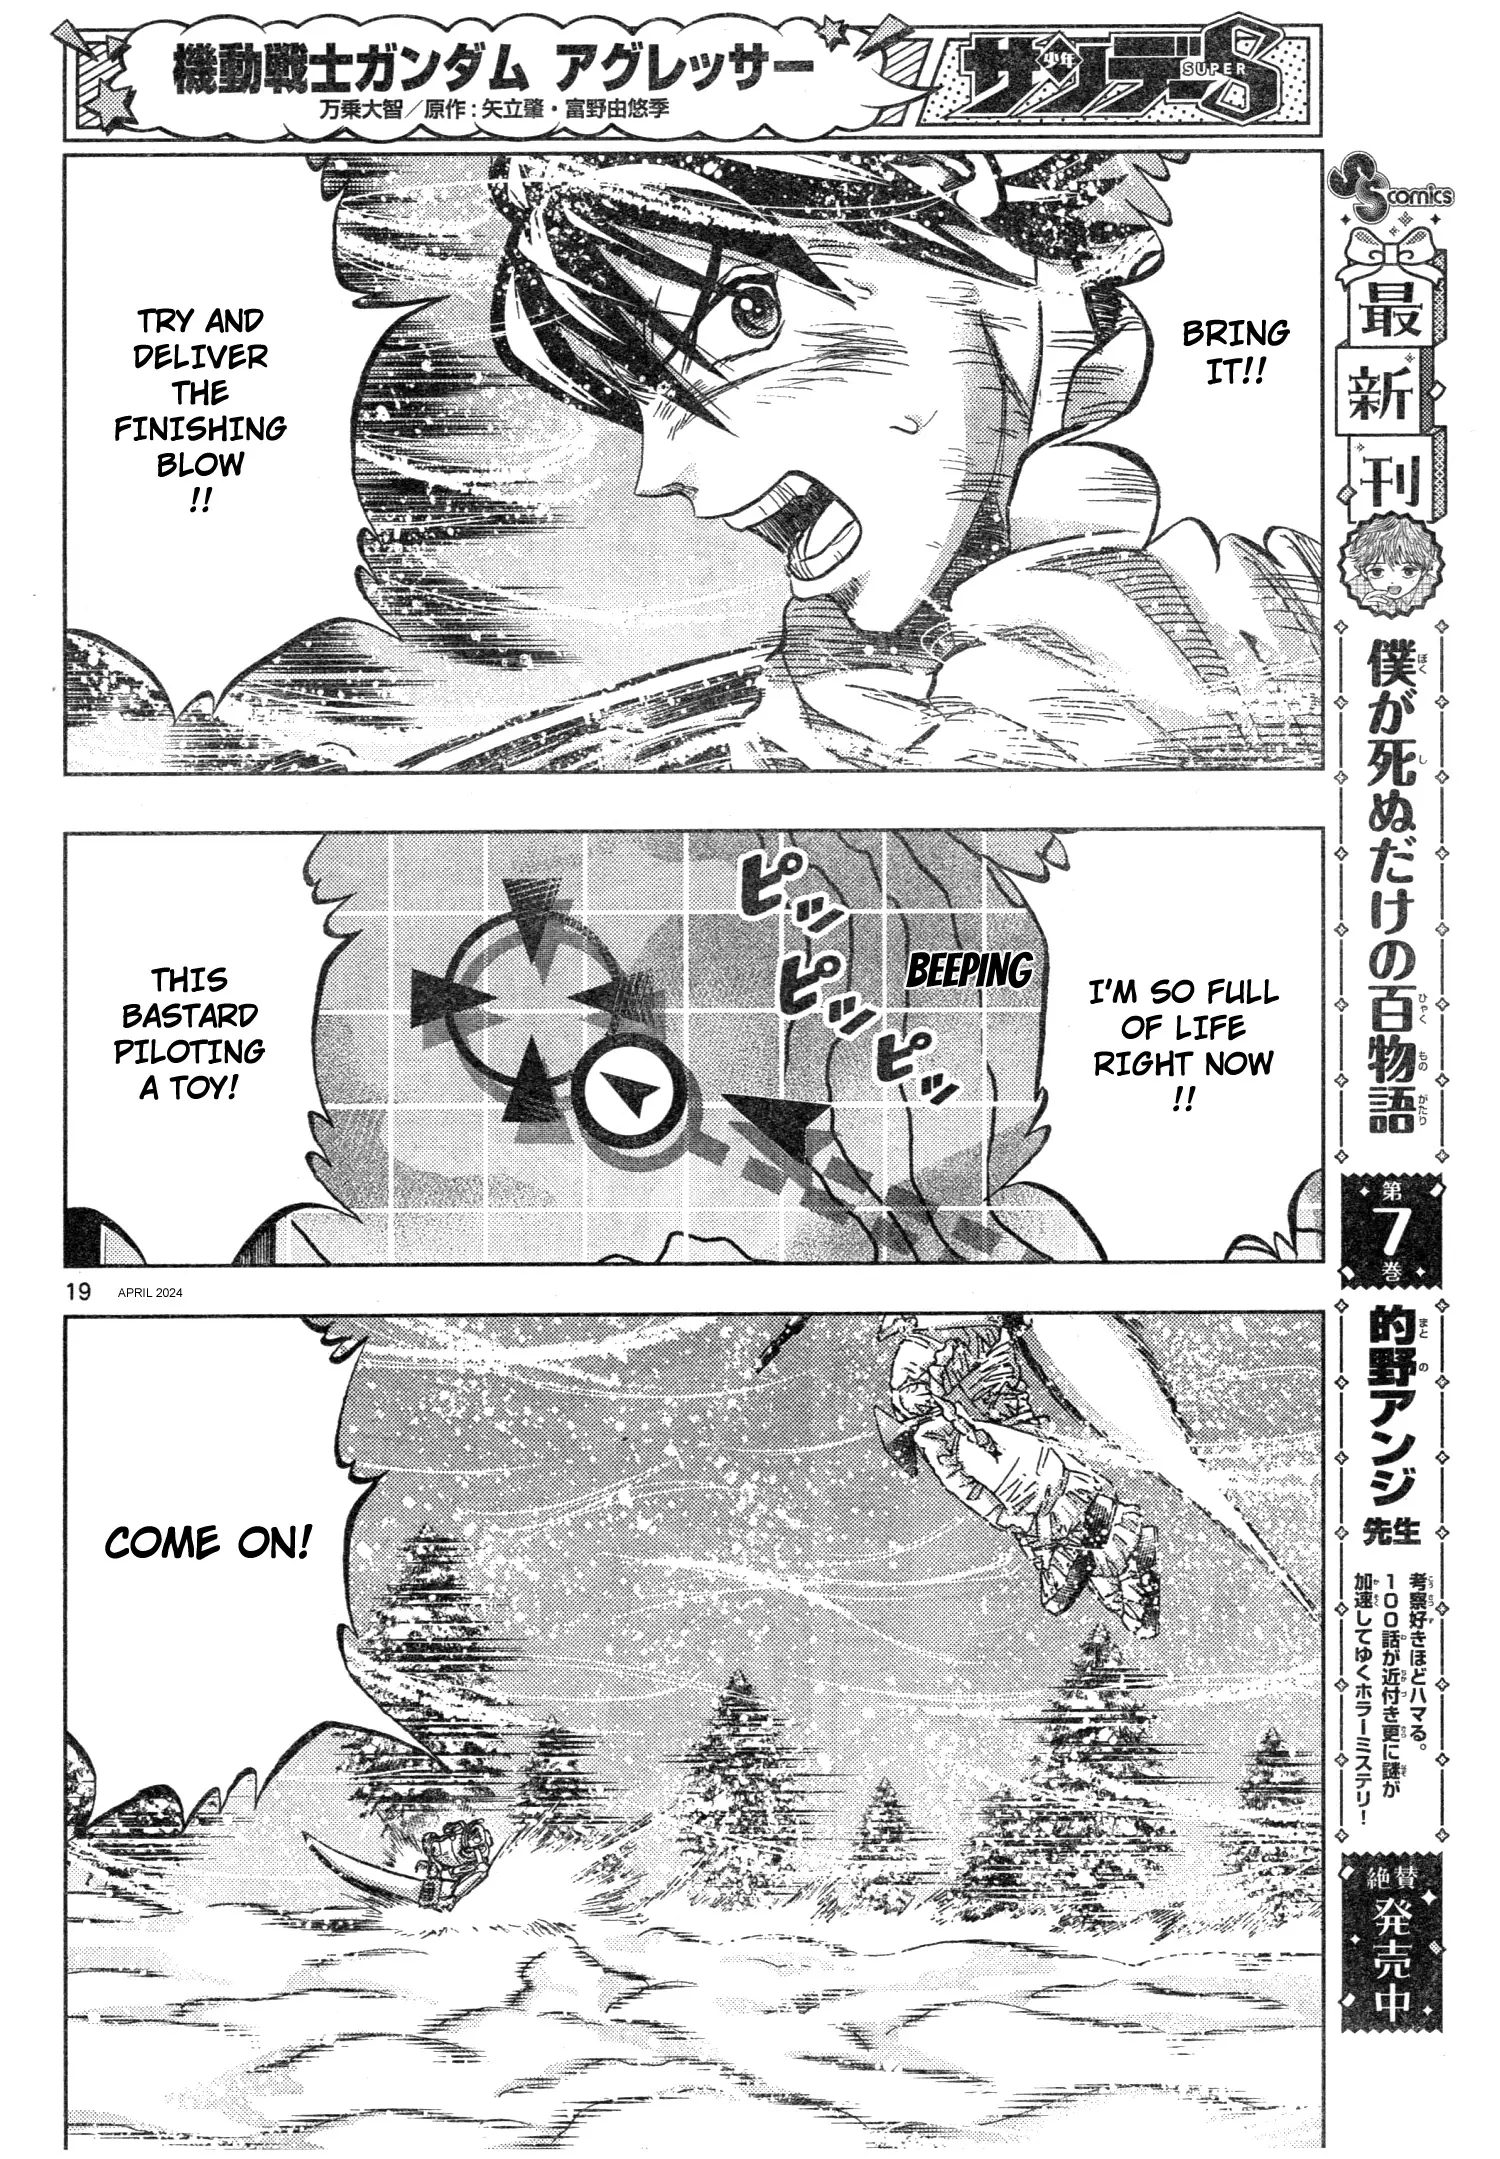 Mobile Suit Gundam Aggressor - 105 page 19-9701e9f2